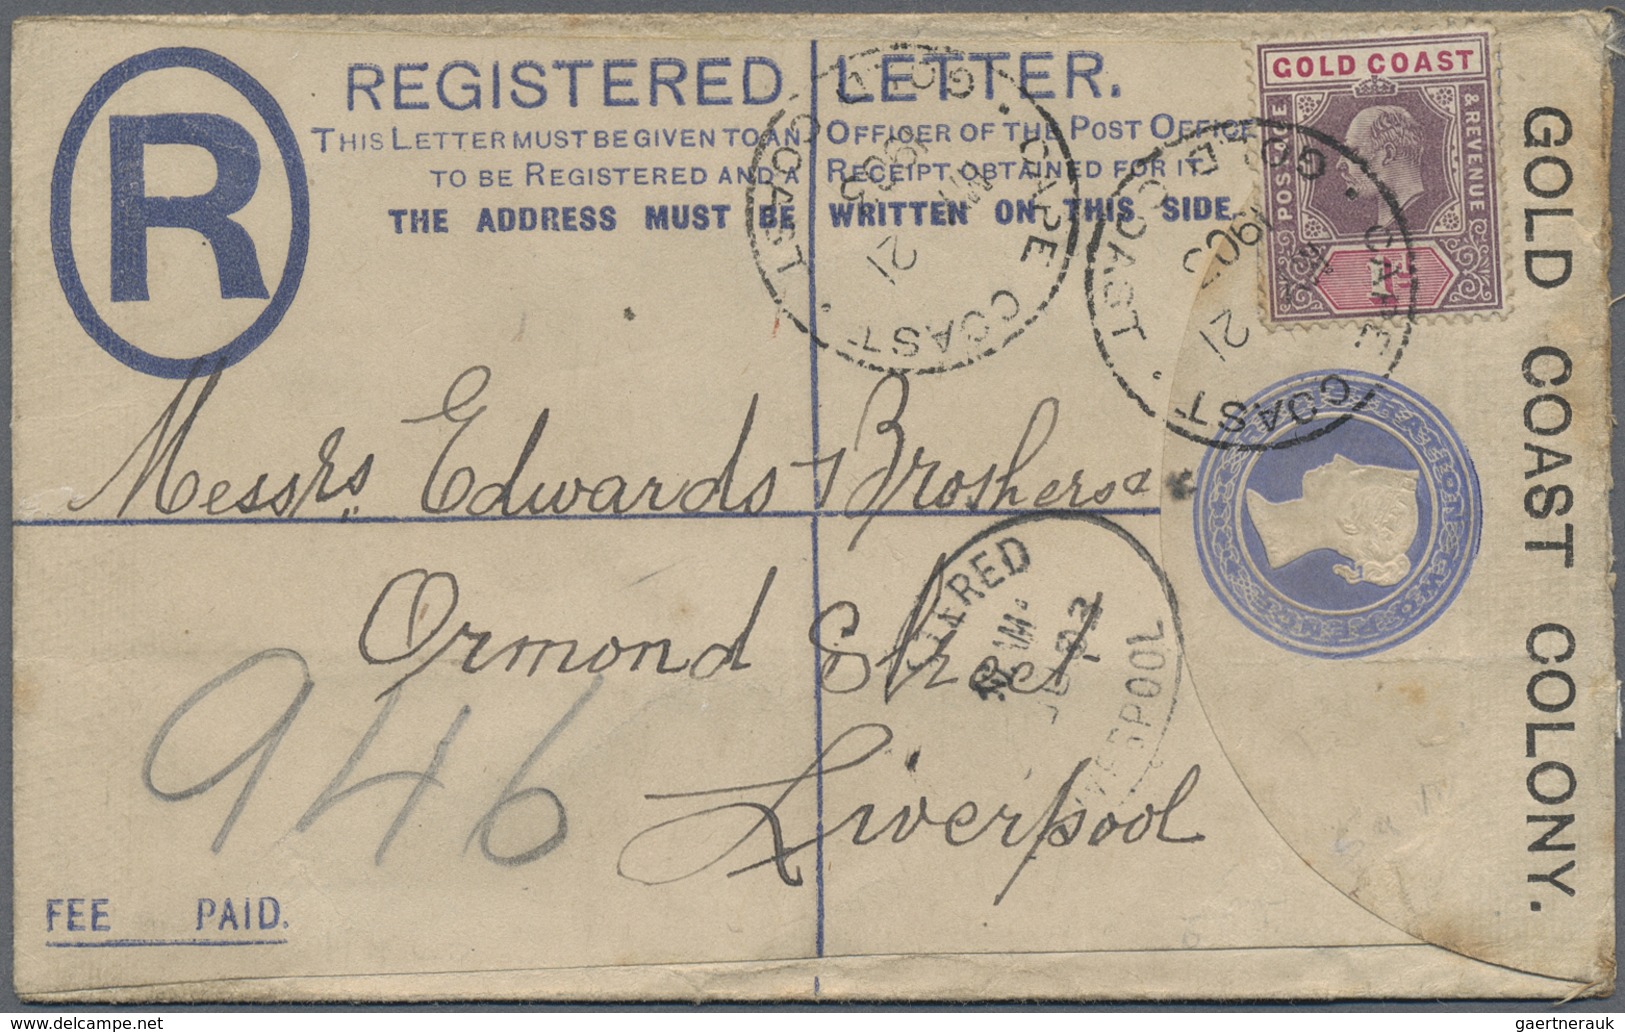 Br Goldküste: 1894/1952: 36 interesting envelopes, picture postcards and postal stationeries including